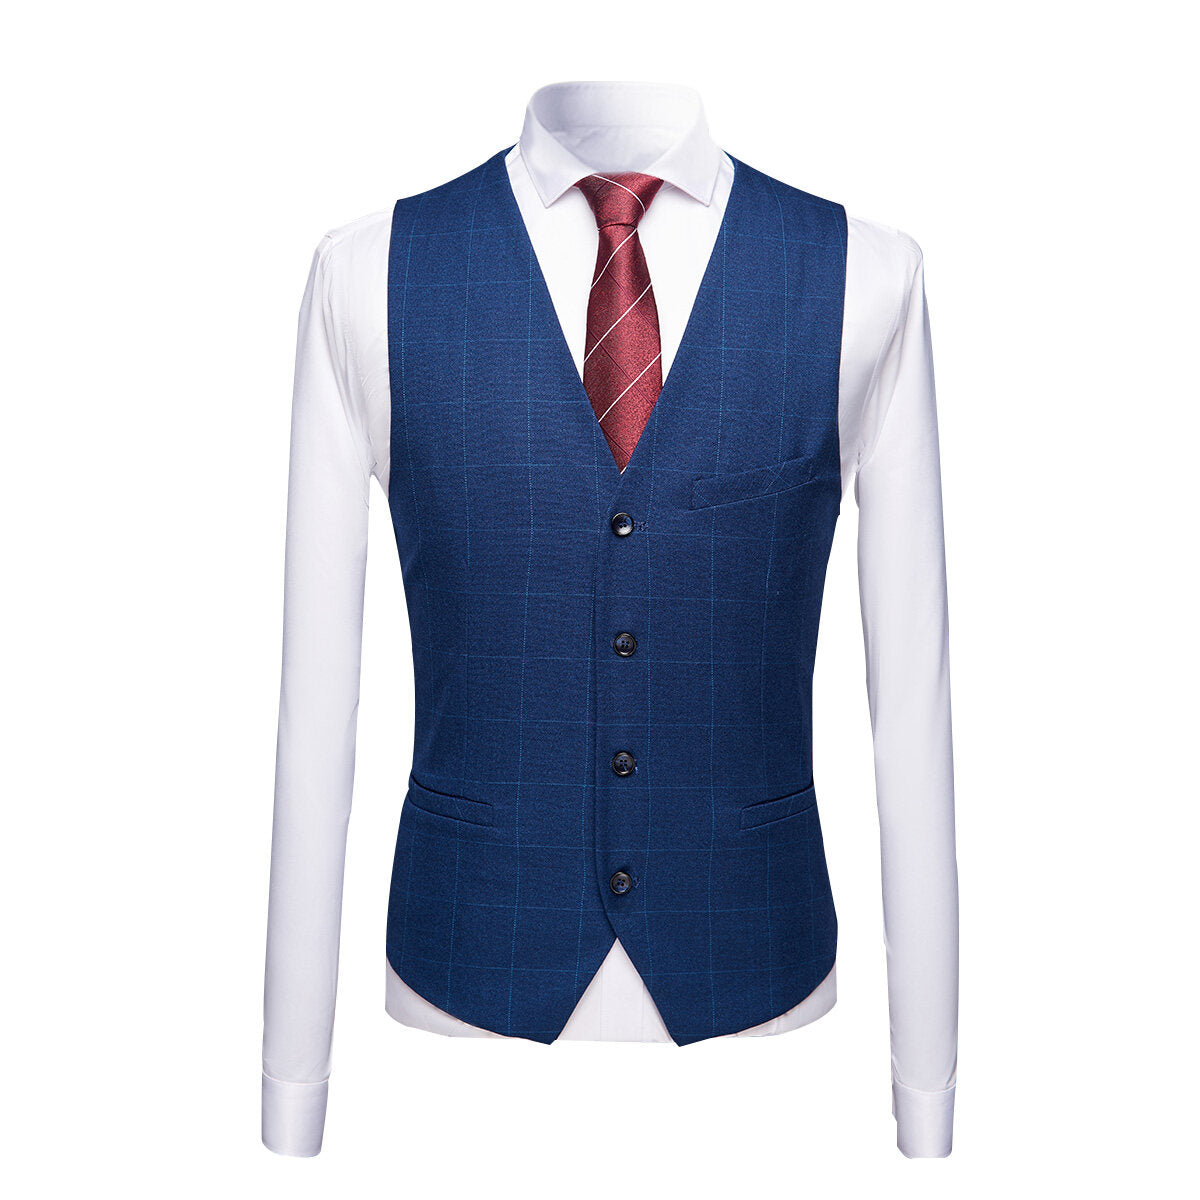 3-Piece Slim Fit Suit Plaid Casual Navy Suit